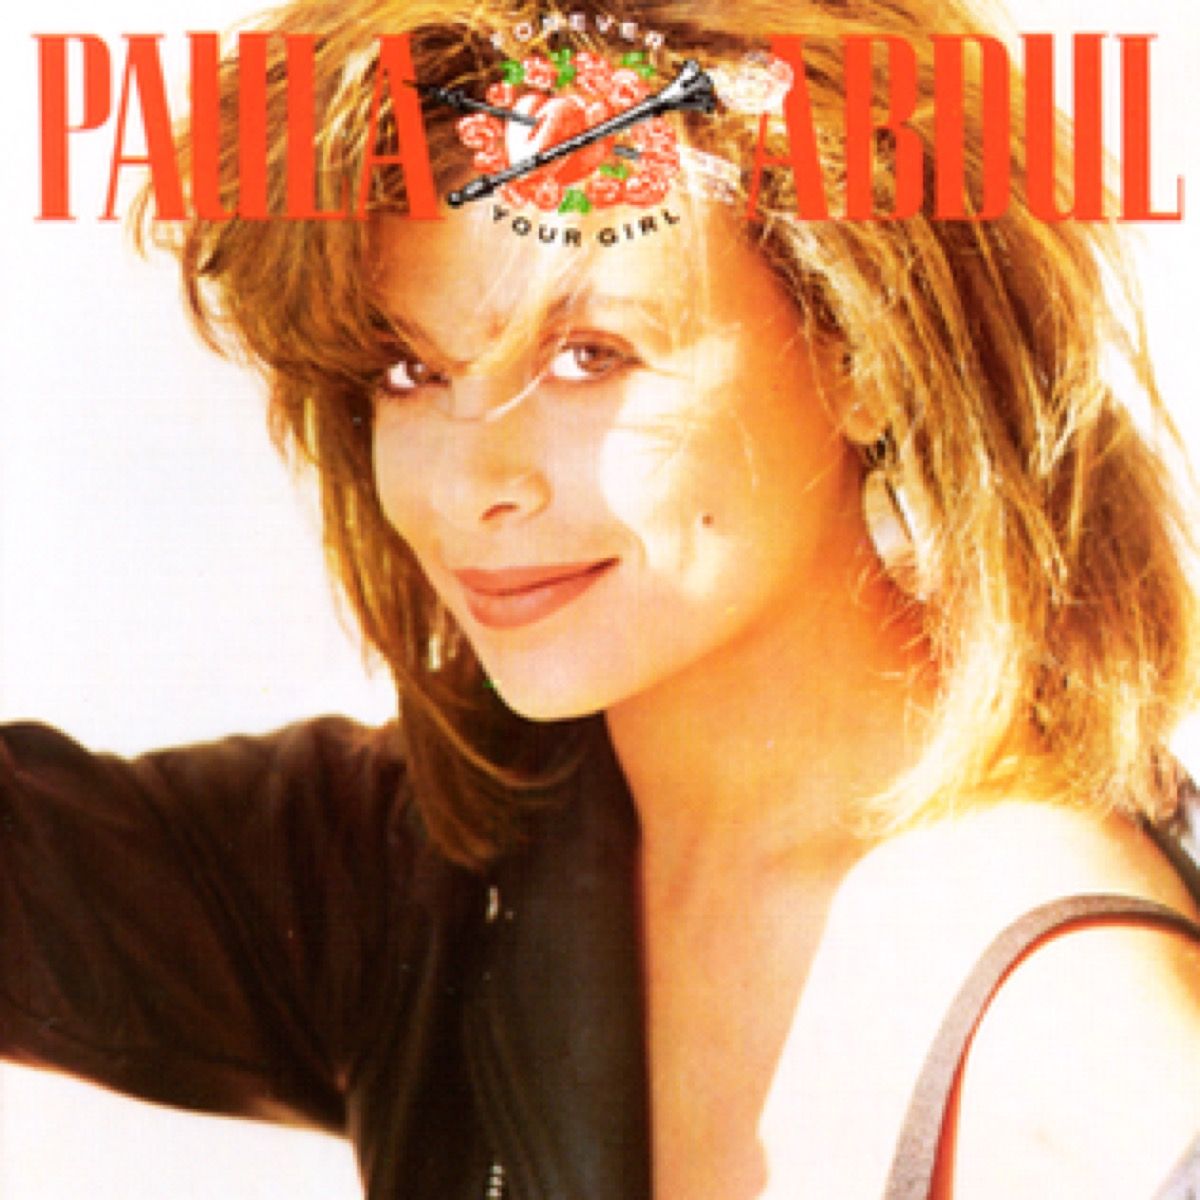 Paula Abduli album 